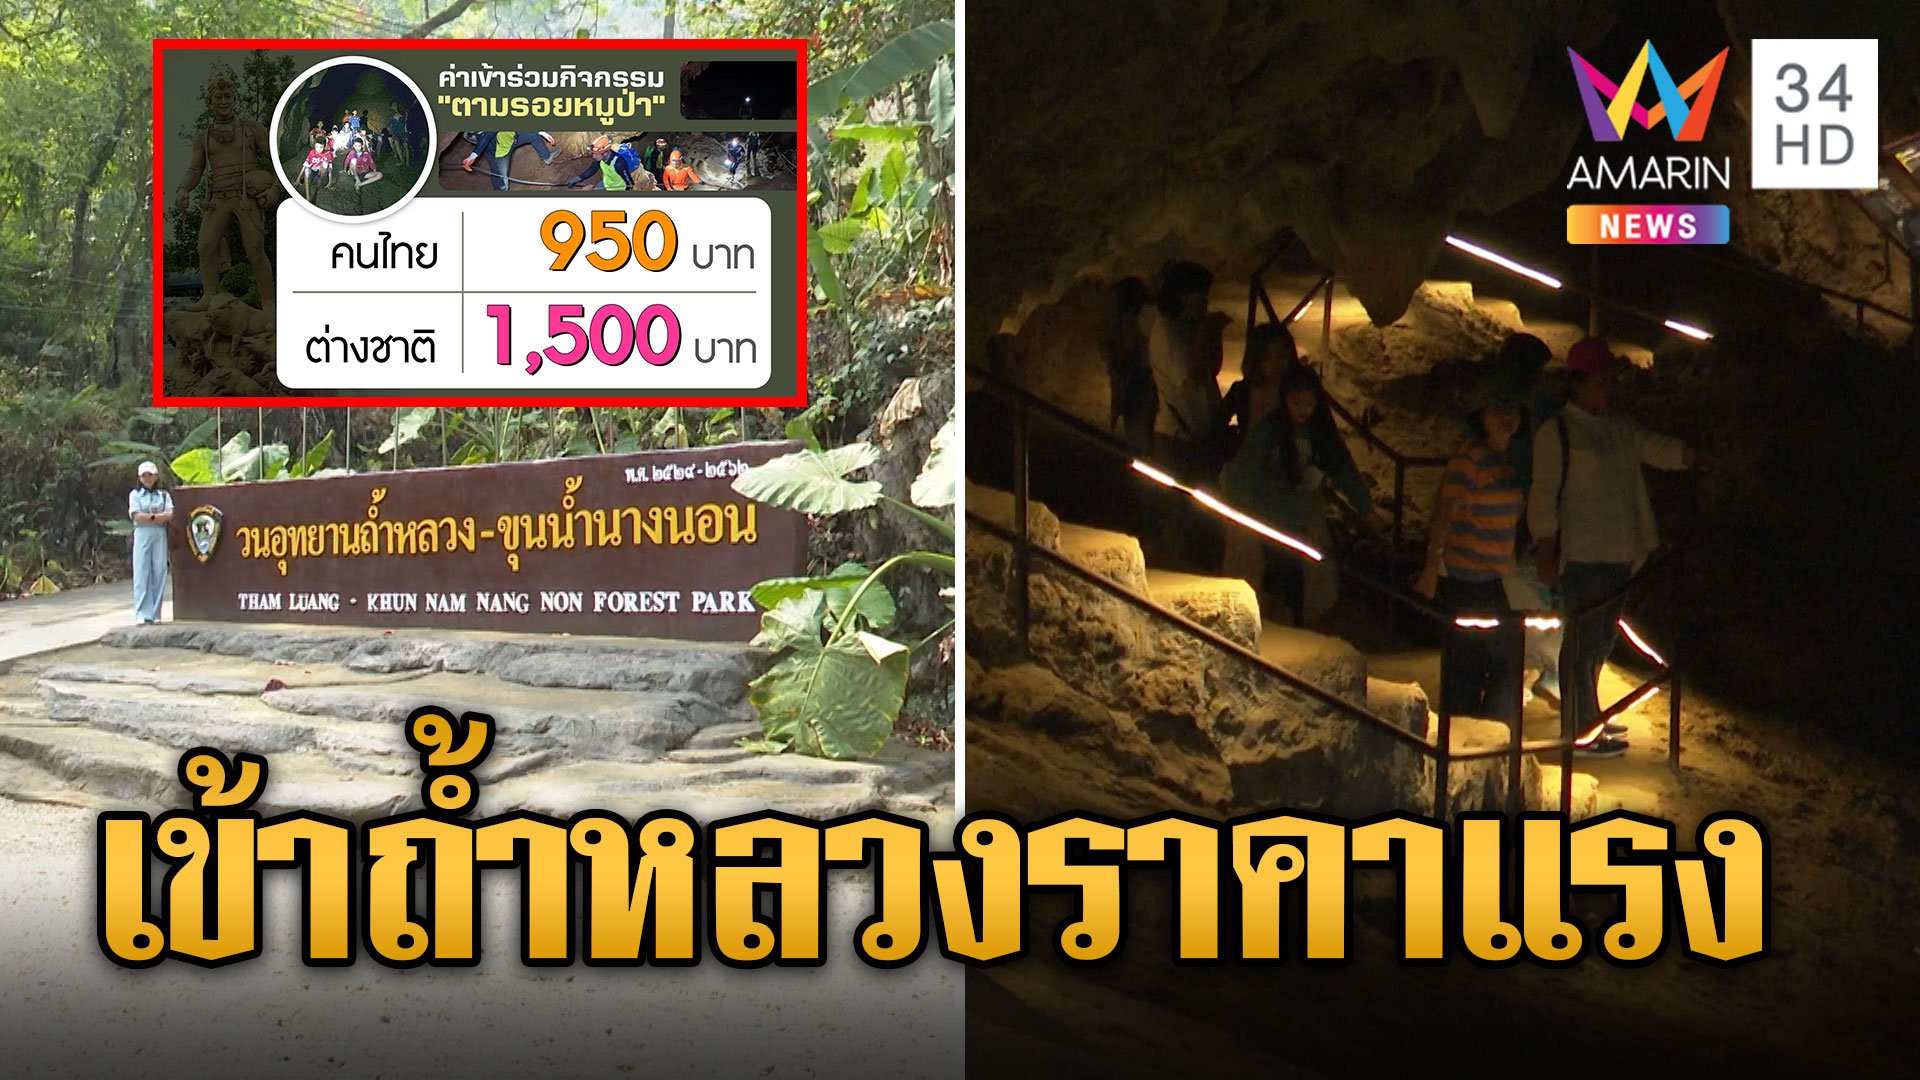 ดราม่าทริป ตามรอยหมูป่า โขกราคาสุดช็อกแรงทั้งไทย-ฝรั่ง | ข่าวอรุณอมรินทร์ | 19 ธ.ค. 66 | AMARIN TVHD34